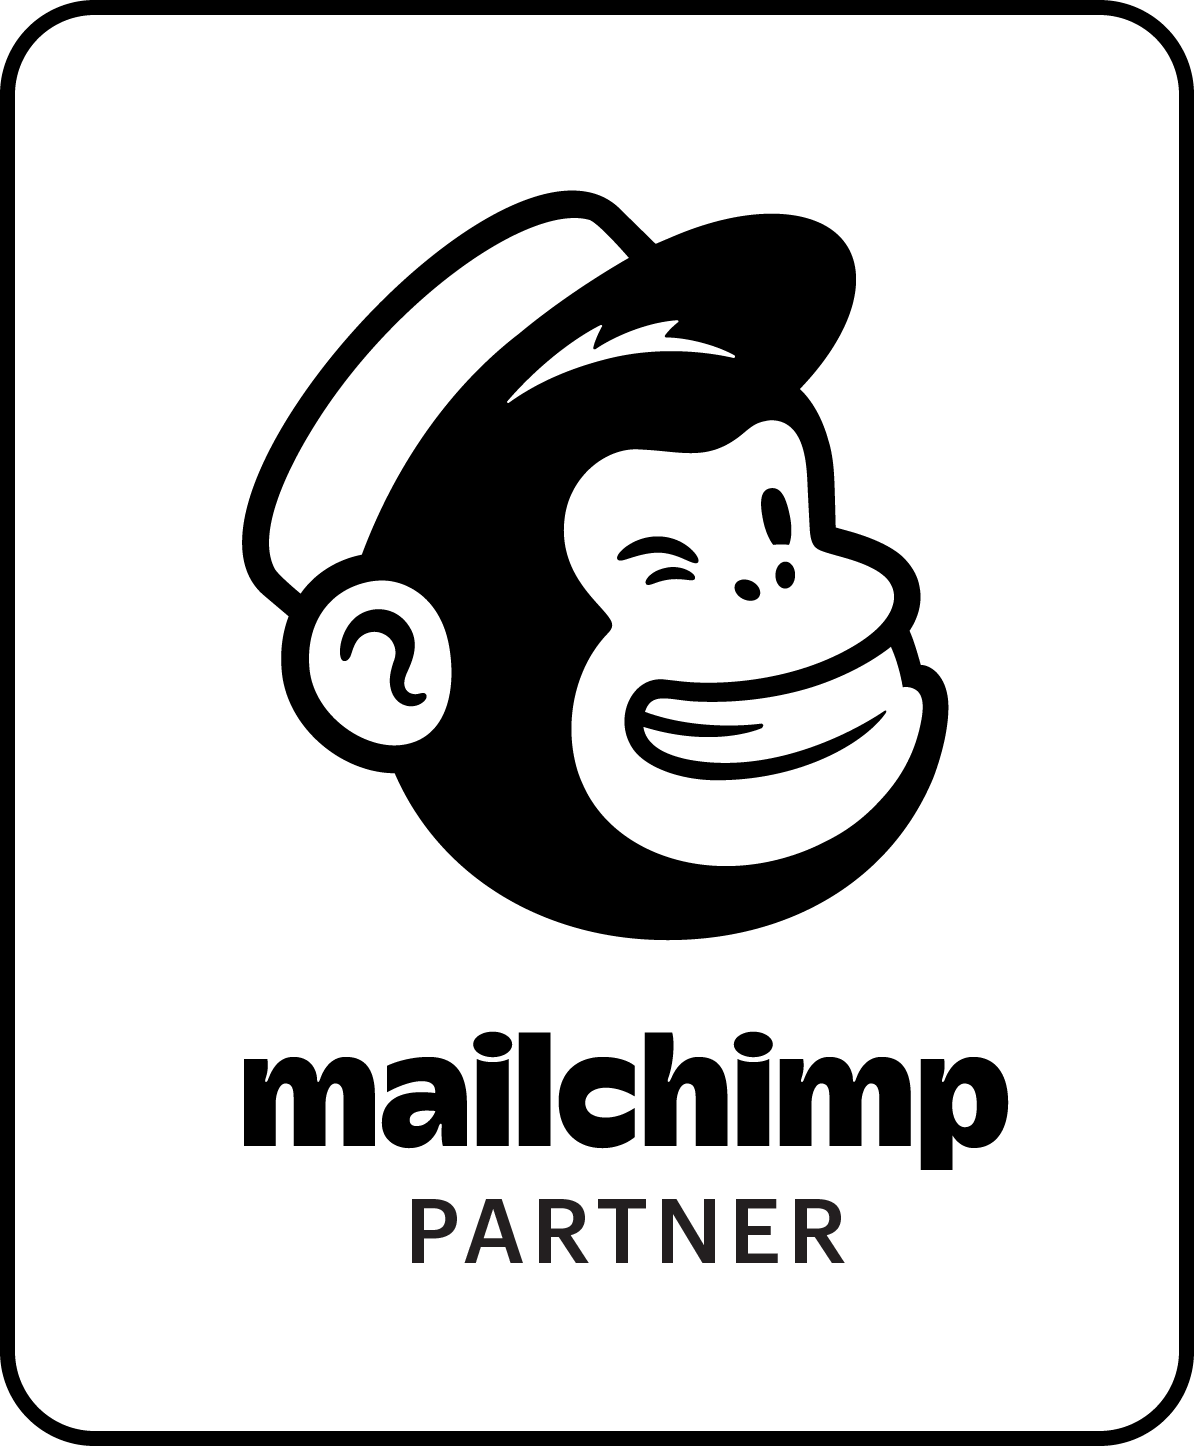 MailChimp Partner logo